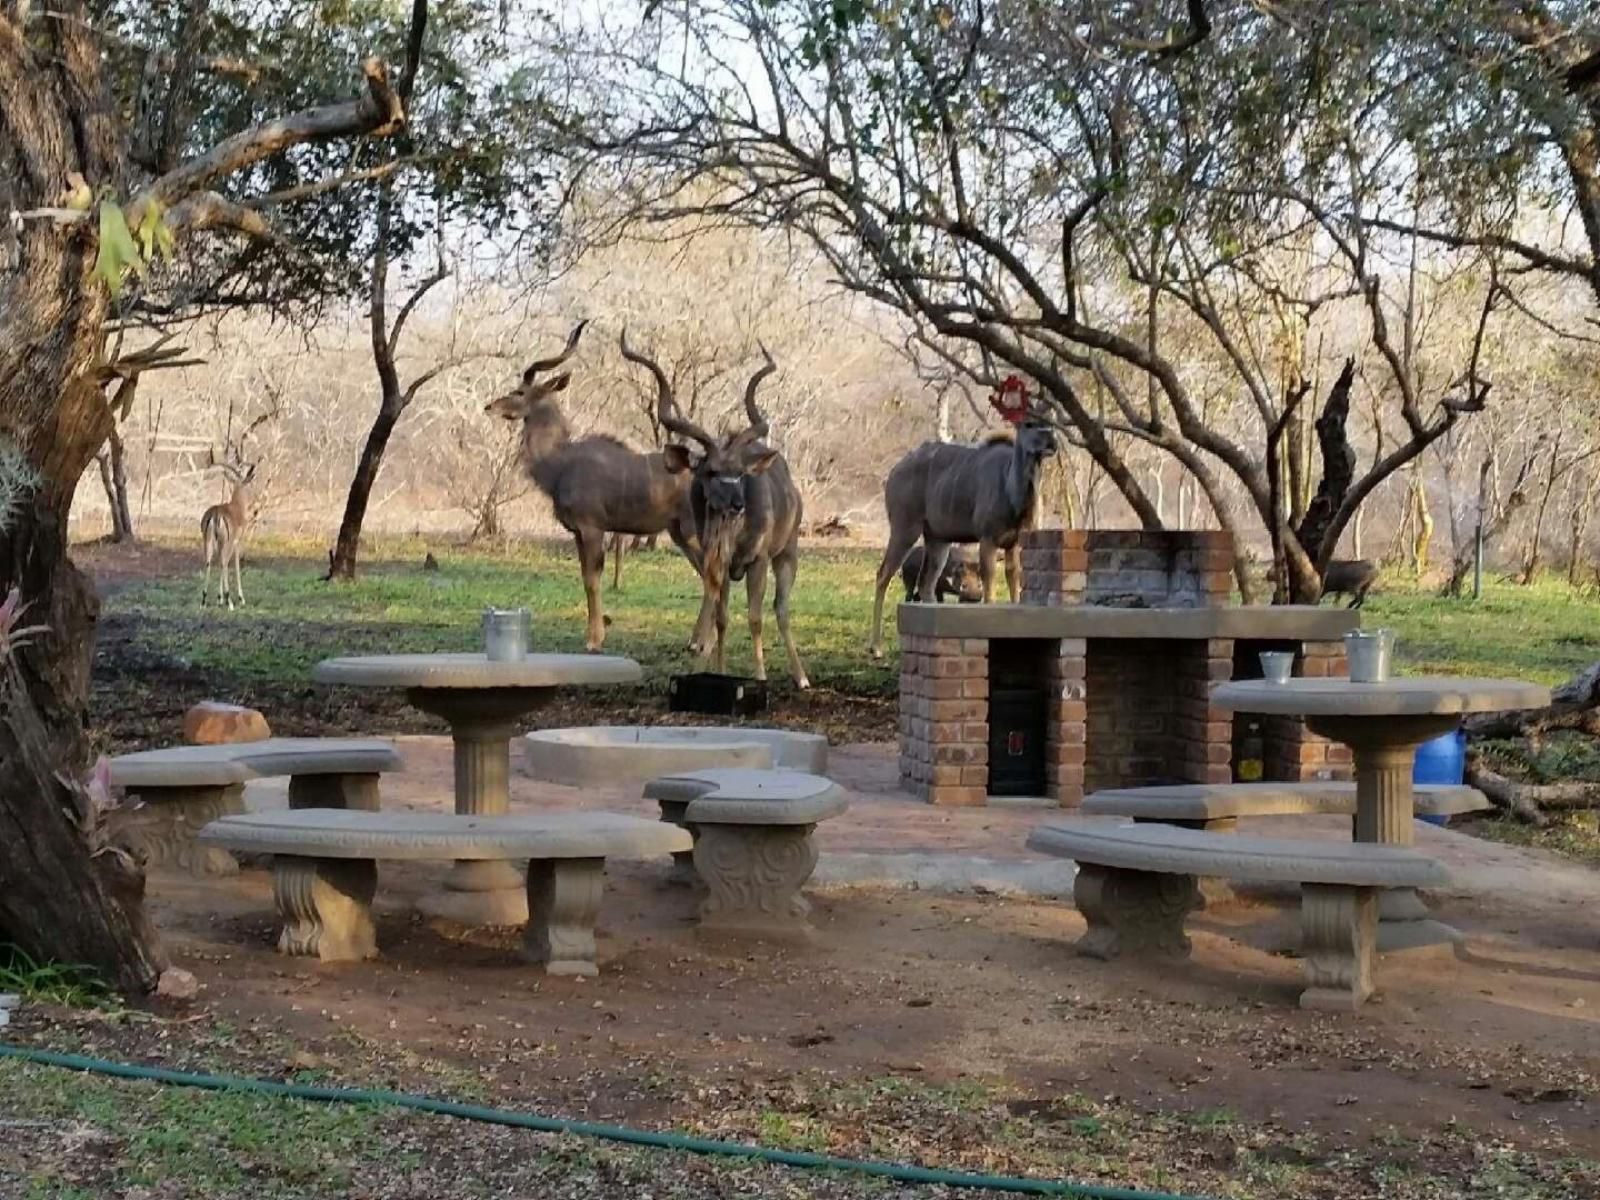 Doringpoort Lodge Marloth Park Mpumalanga South Africa Deer, Mammal, Animal, Herbivore